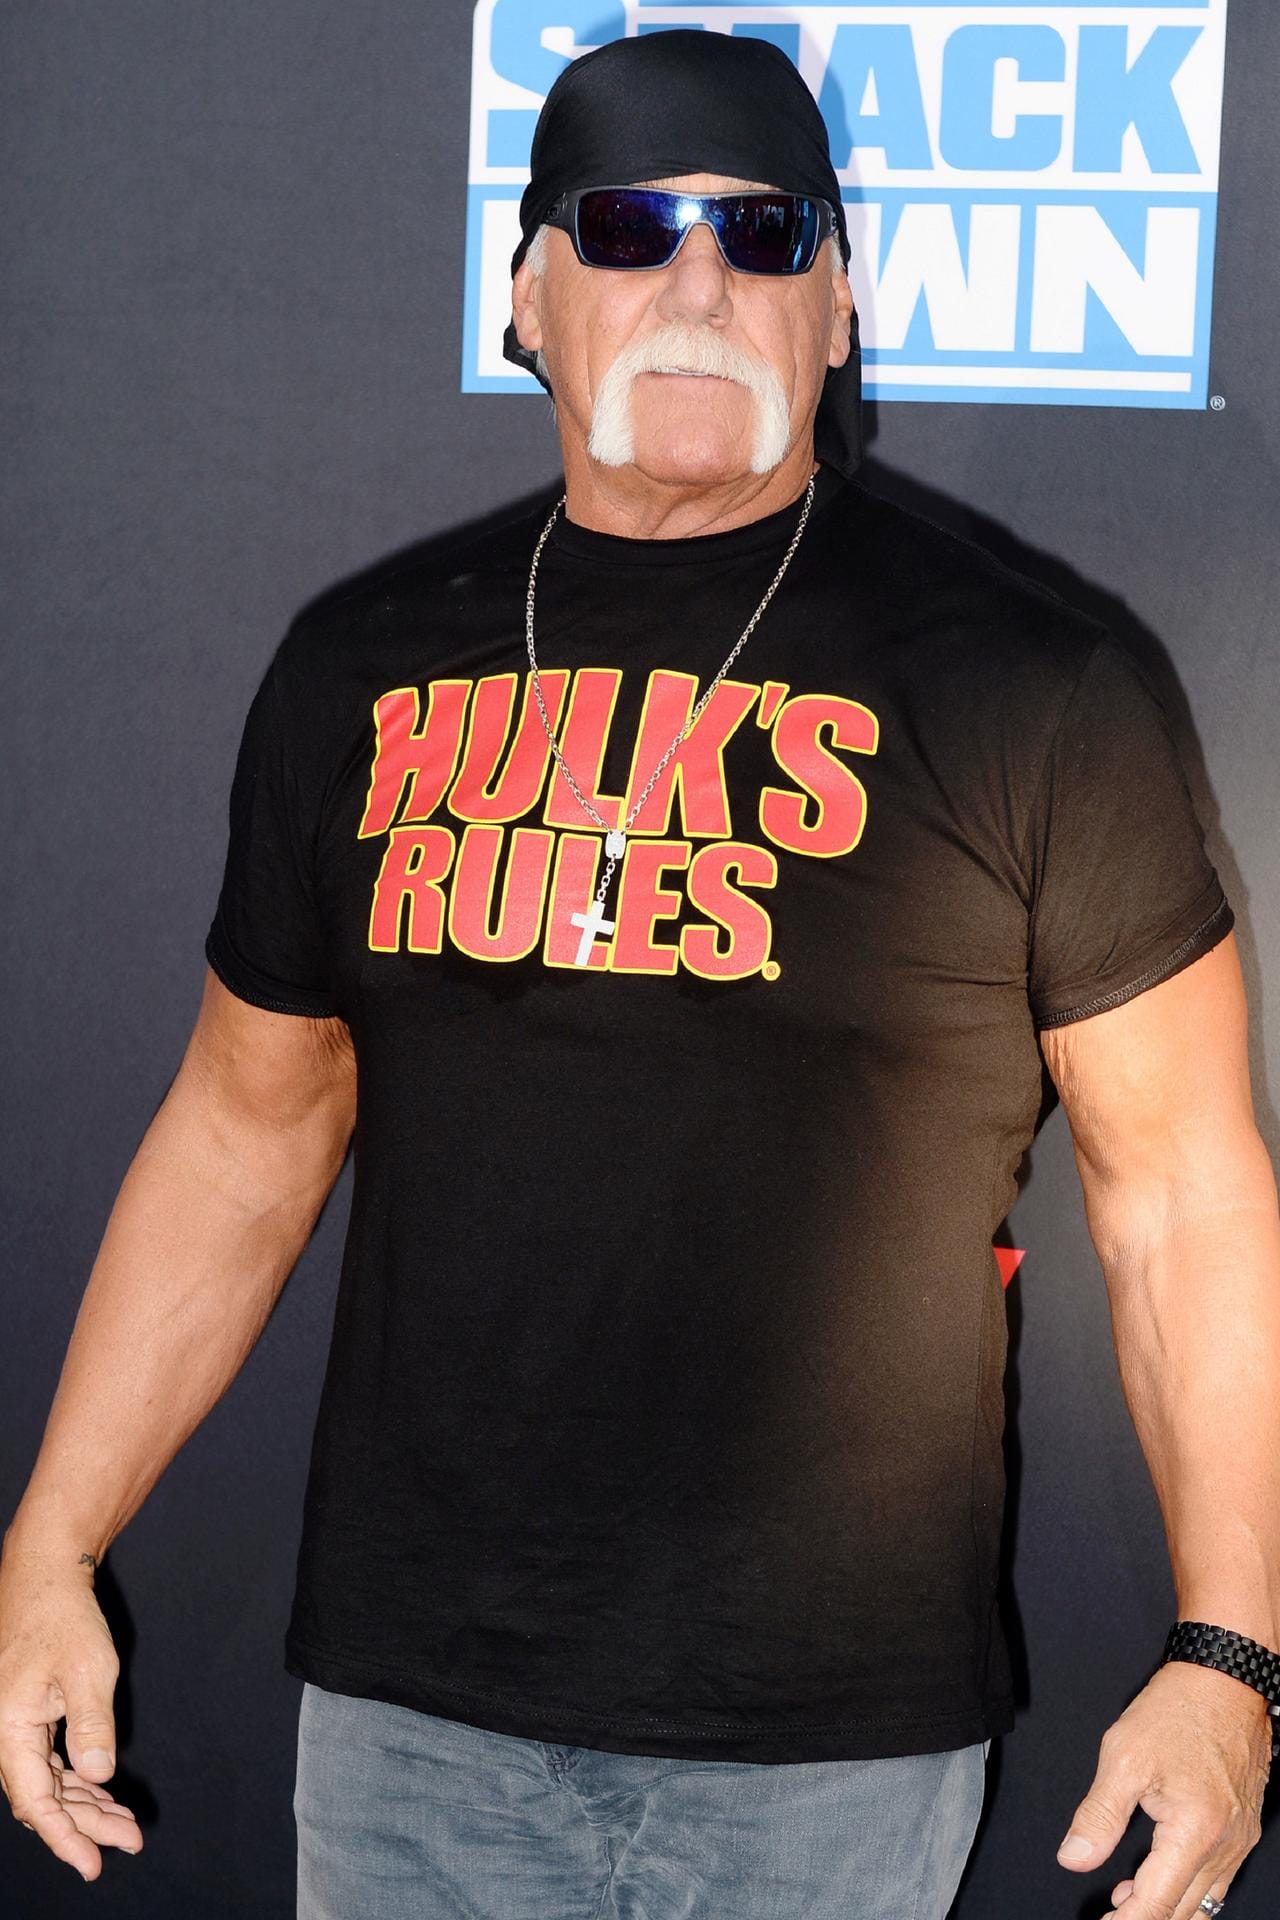 Hulk Hogan: Der ehemalige Wrestling-Star ist ein großer Anhänger von Donald Trump. Paparazzi gegenüber erklärte er sogar, dass er am liebsten sein Vizepräsident werden würde.